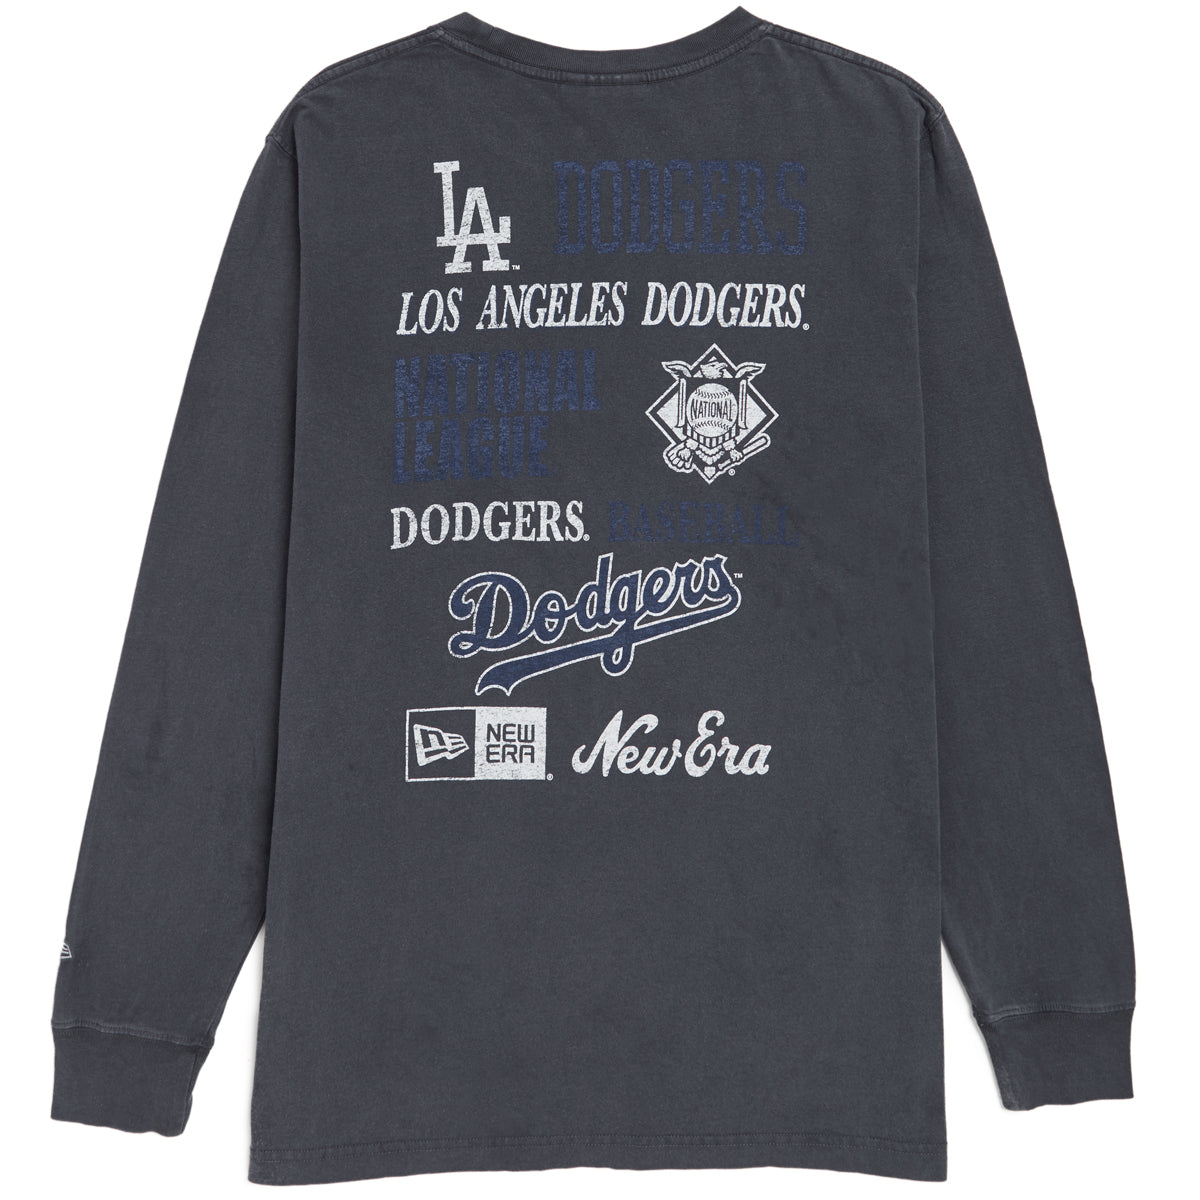 New Era Oschspt Long Sleeve T-Shirt - Dodgers image 2